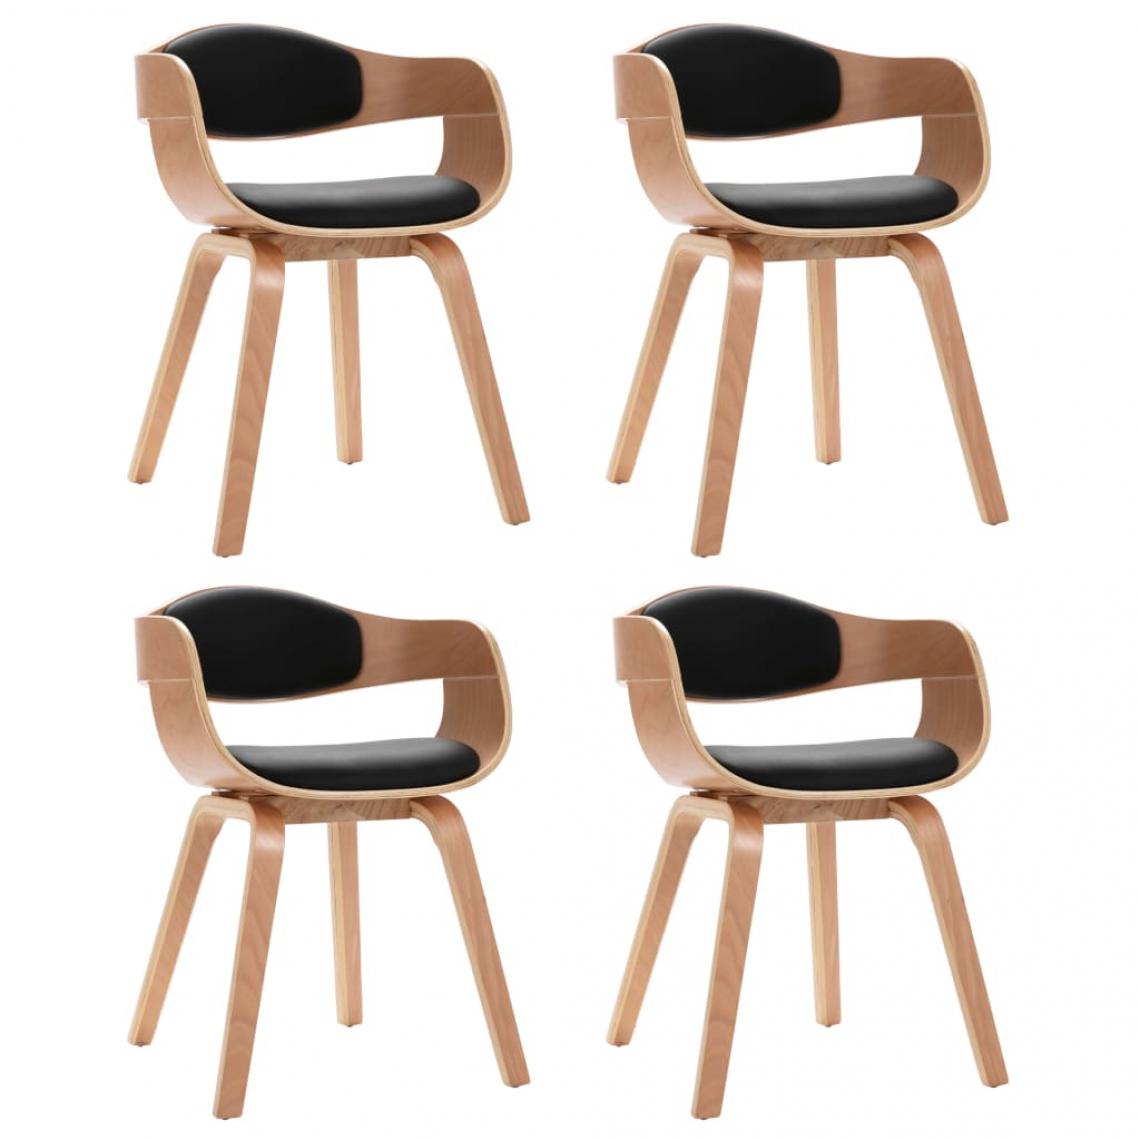 Decoshop26 - Lot de 4 chaises de salle à manger cuisine design moderne bois courbé et similicuir noir CDS021322 - Chaises